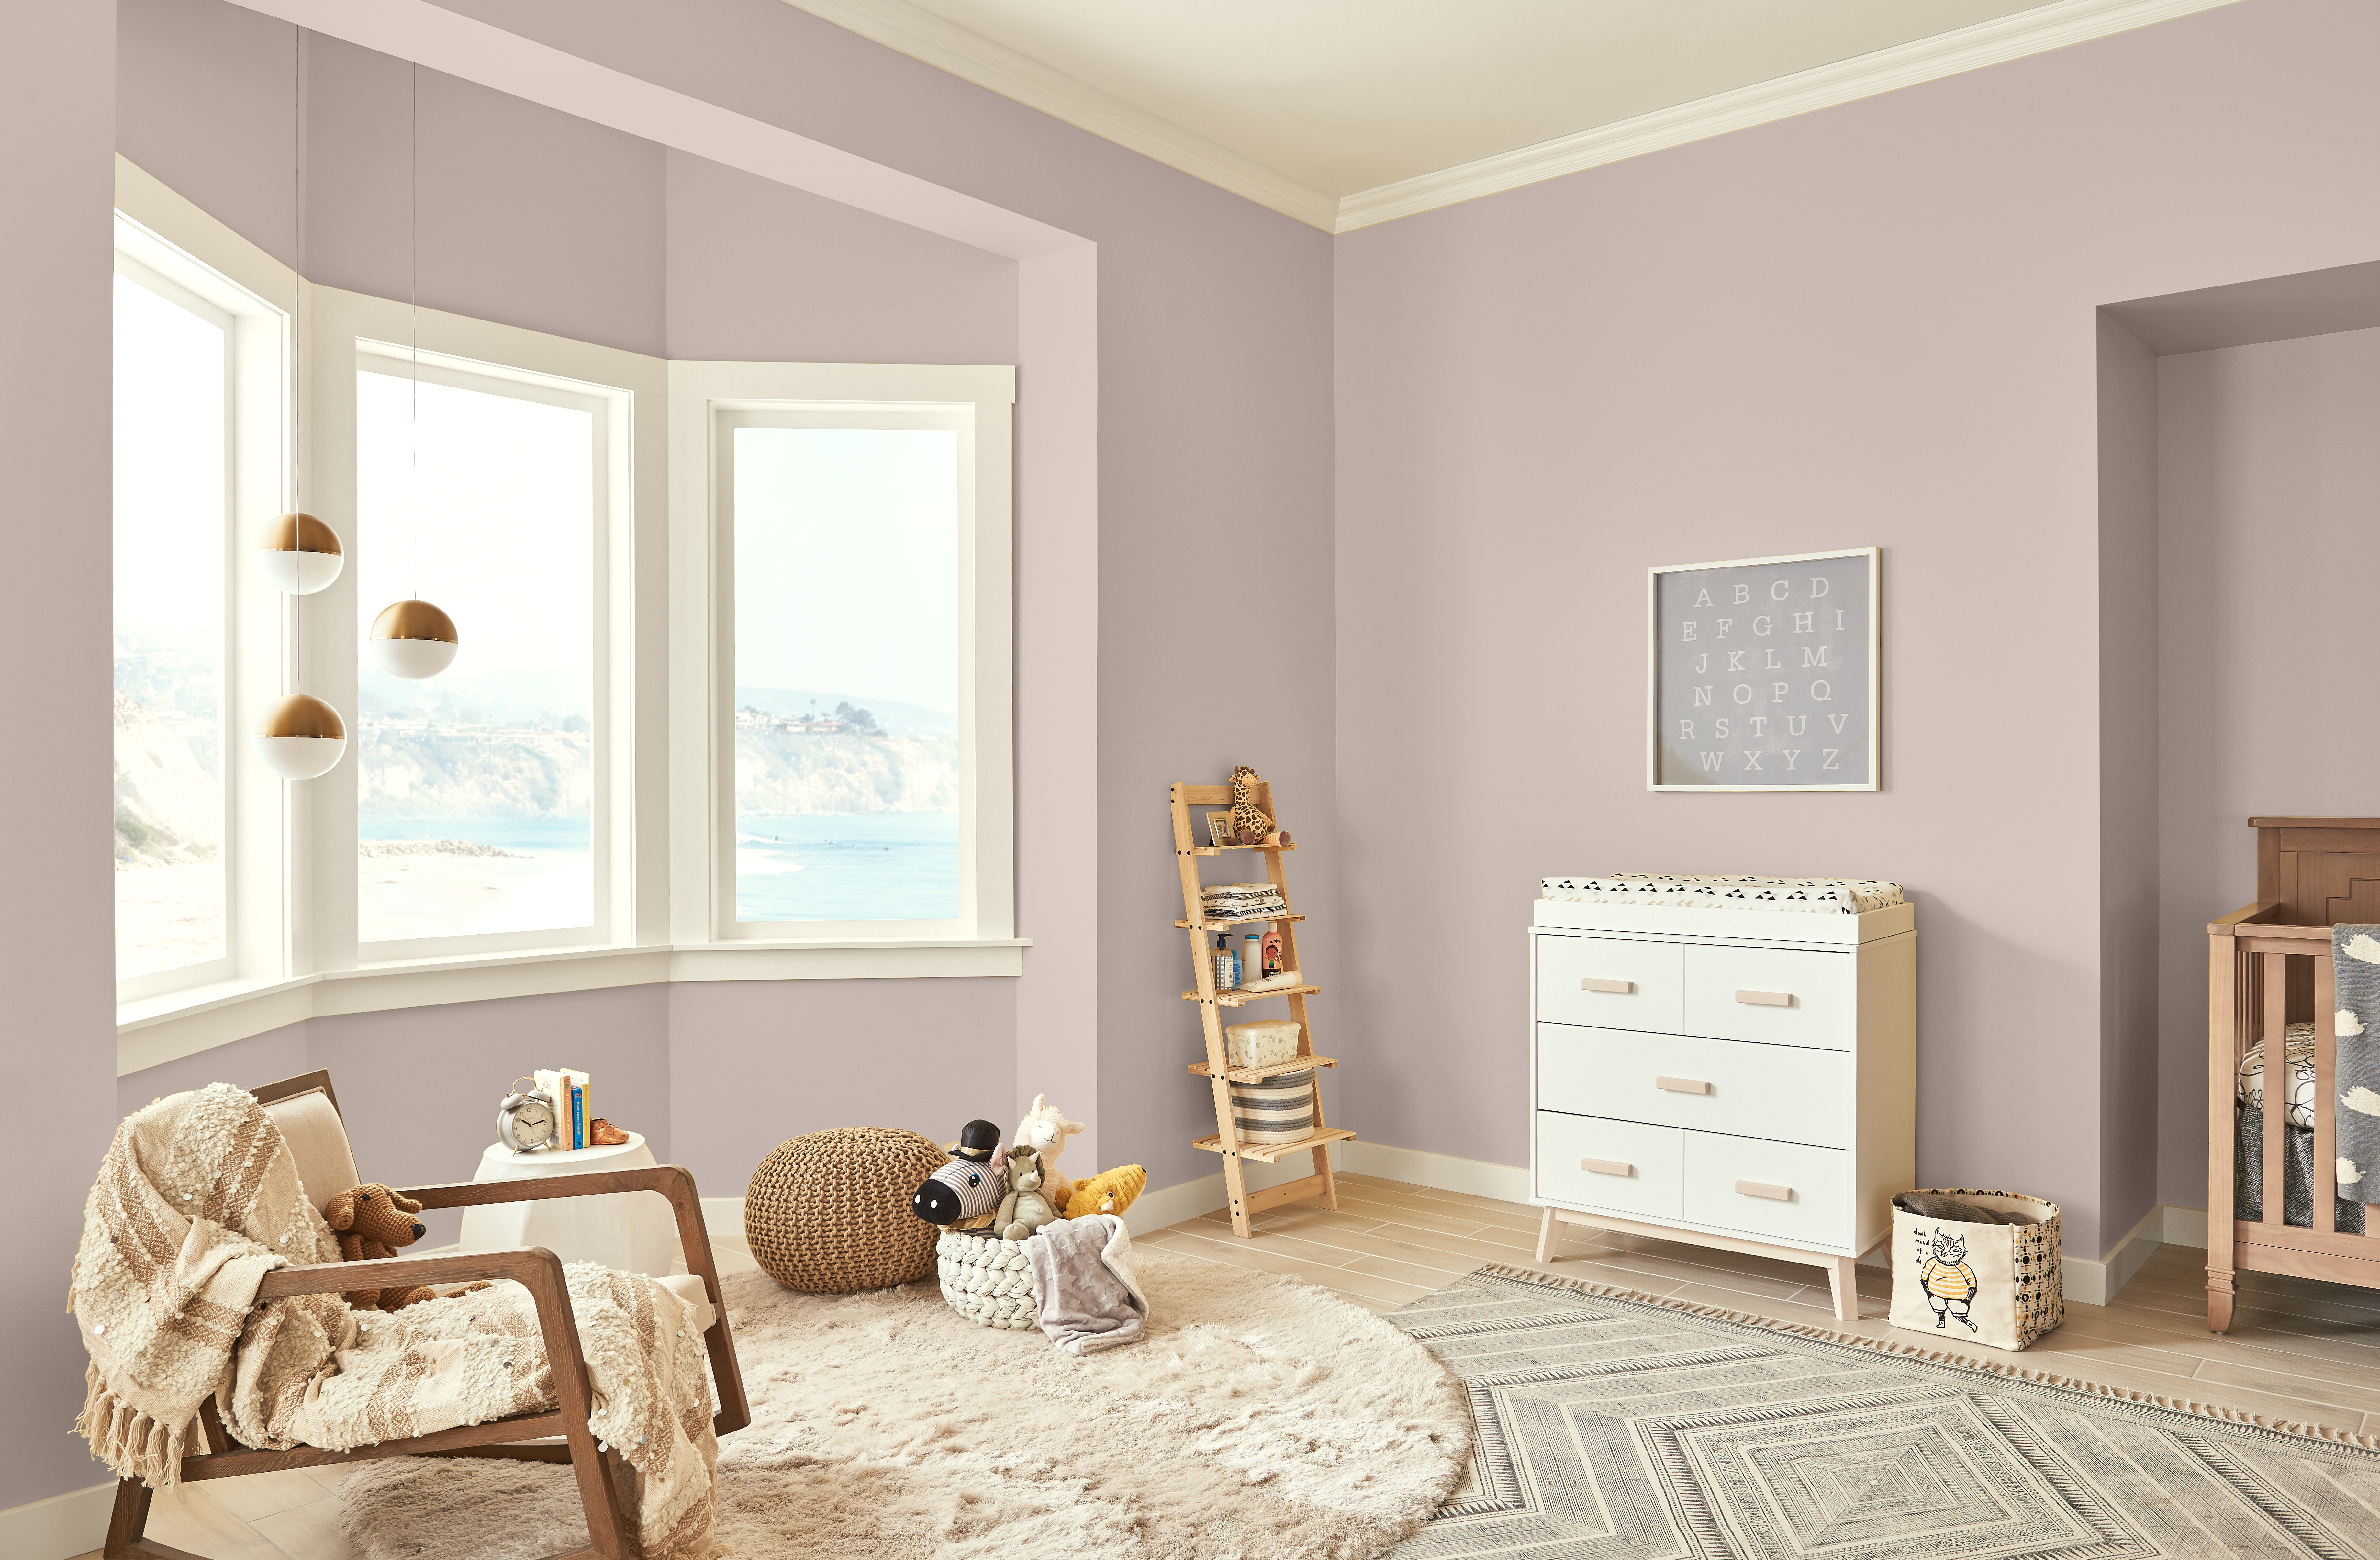 Une vaste chambre d'enfant avec des murs peints en Rose fumé et de grandes fenêtres